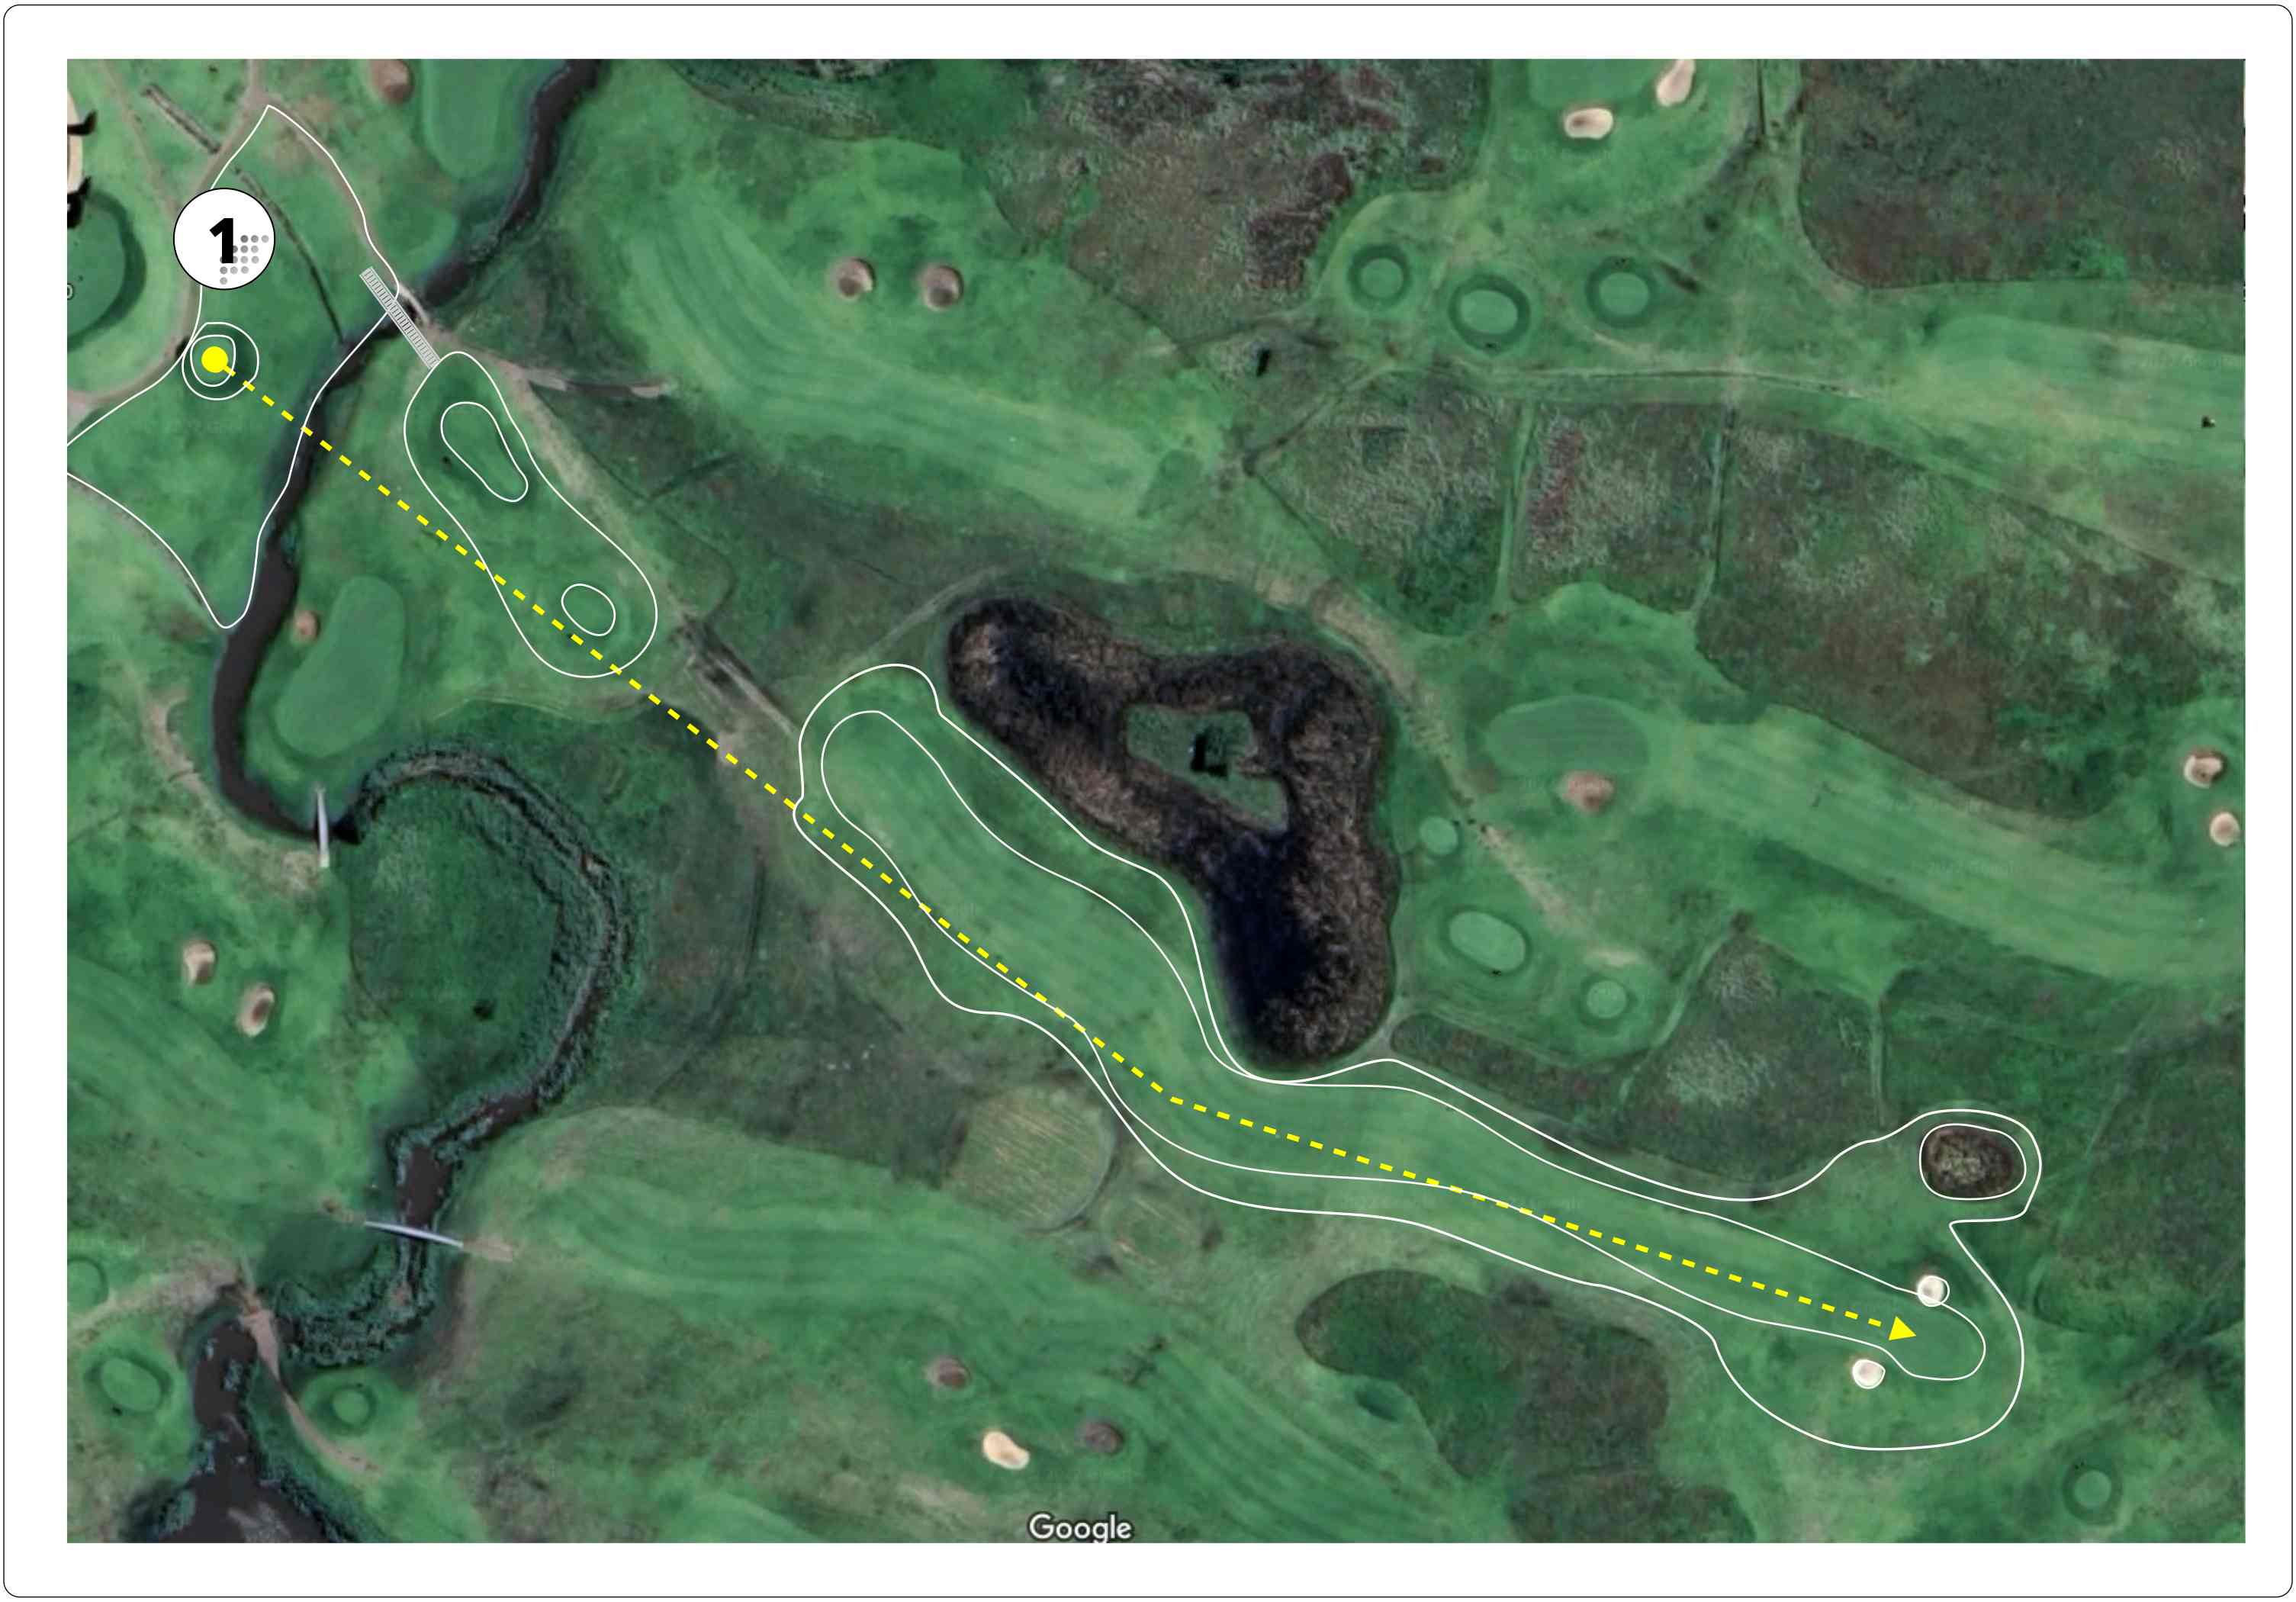 Graceland Golf Course Hole 1 layout